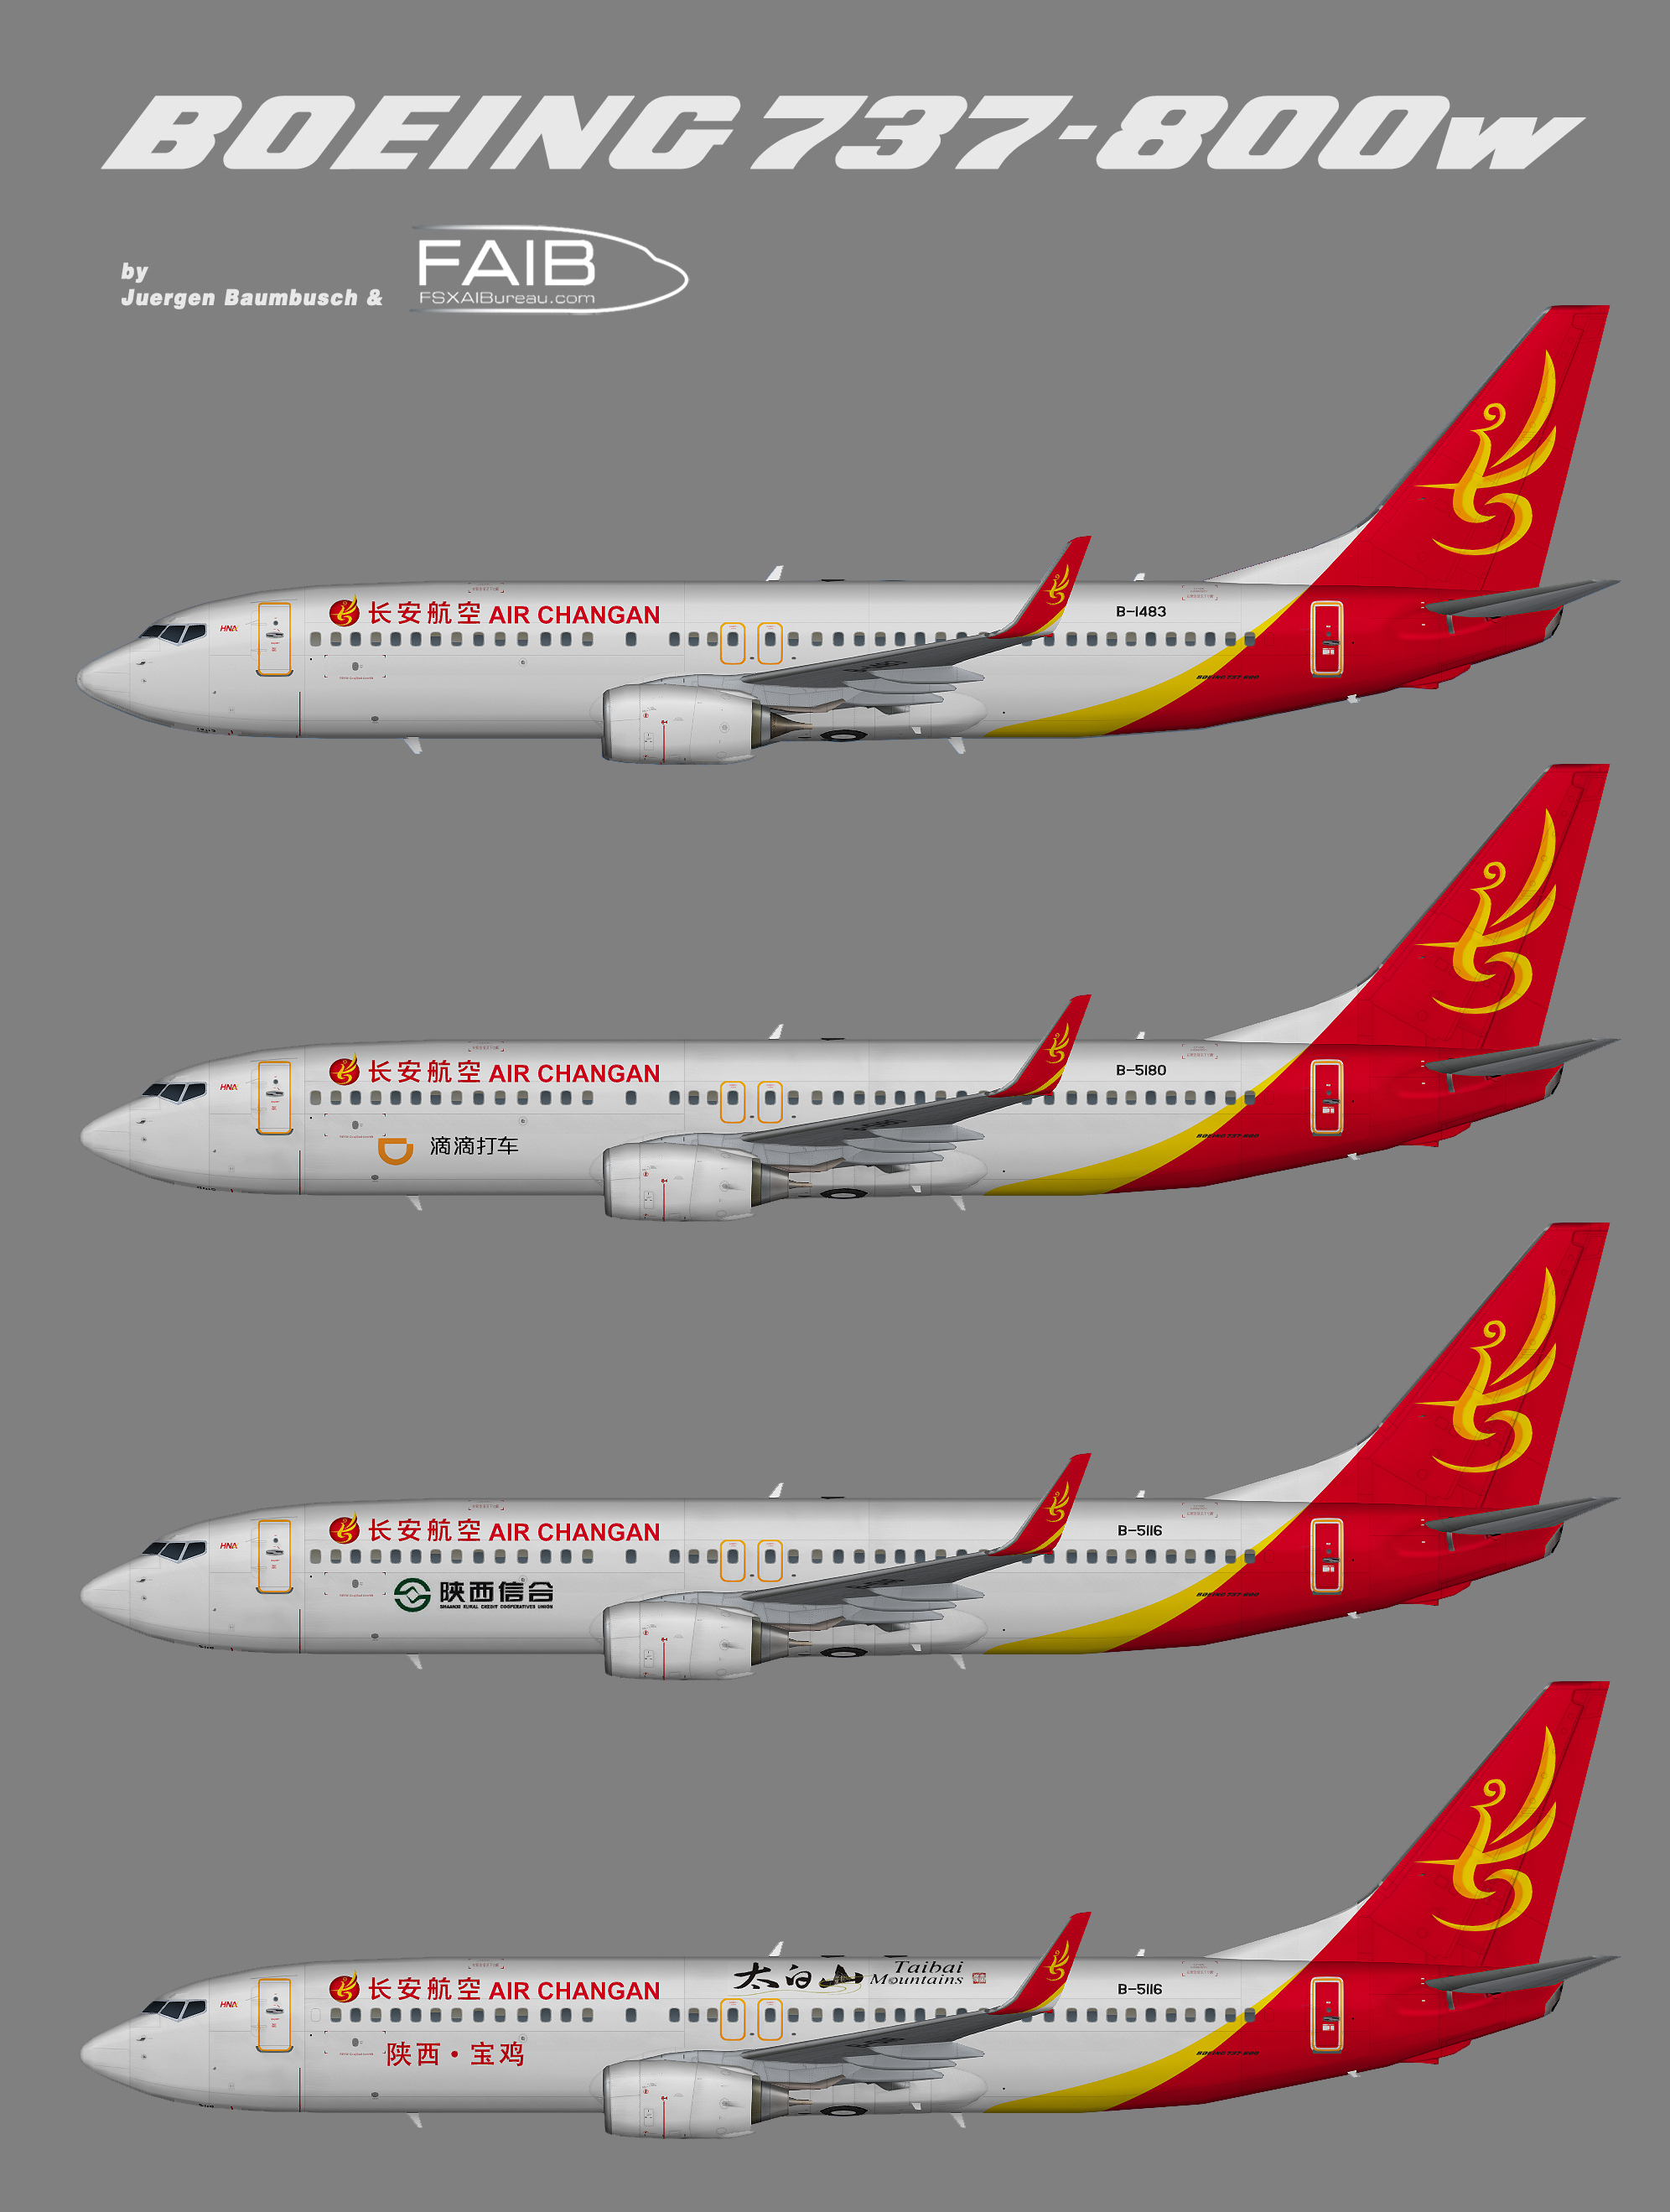 Air Changan (HNA Group) Boeing 737-800w